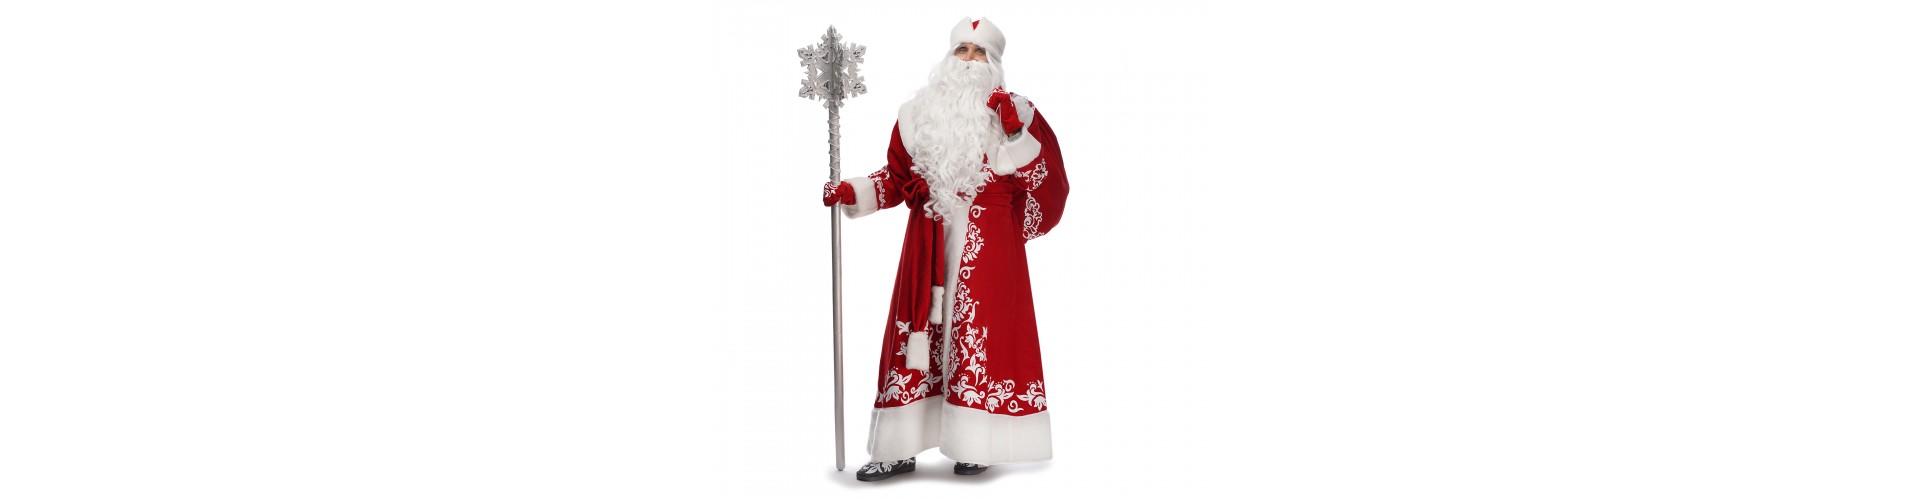 Костюм Деда Мороза – одежда, которая делает чудеса